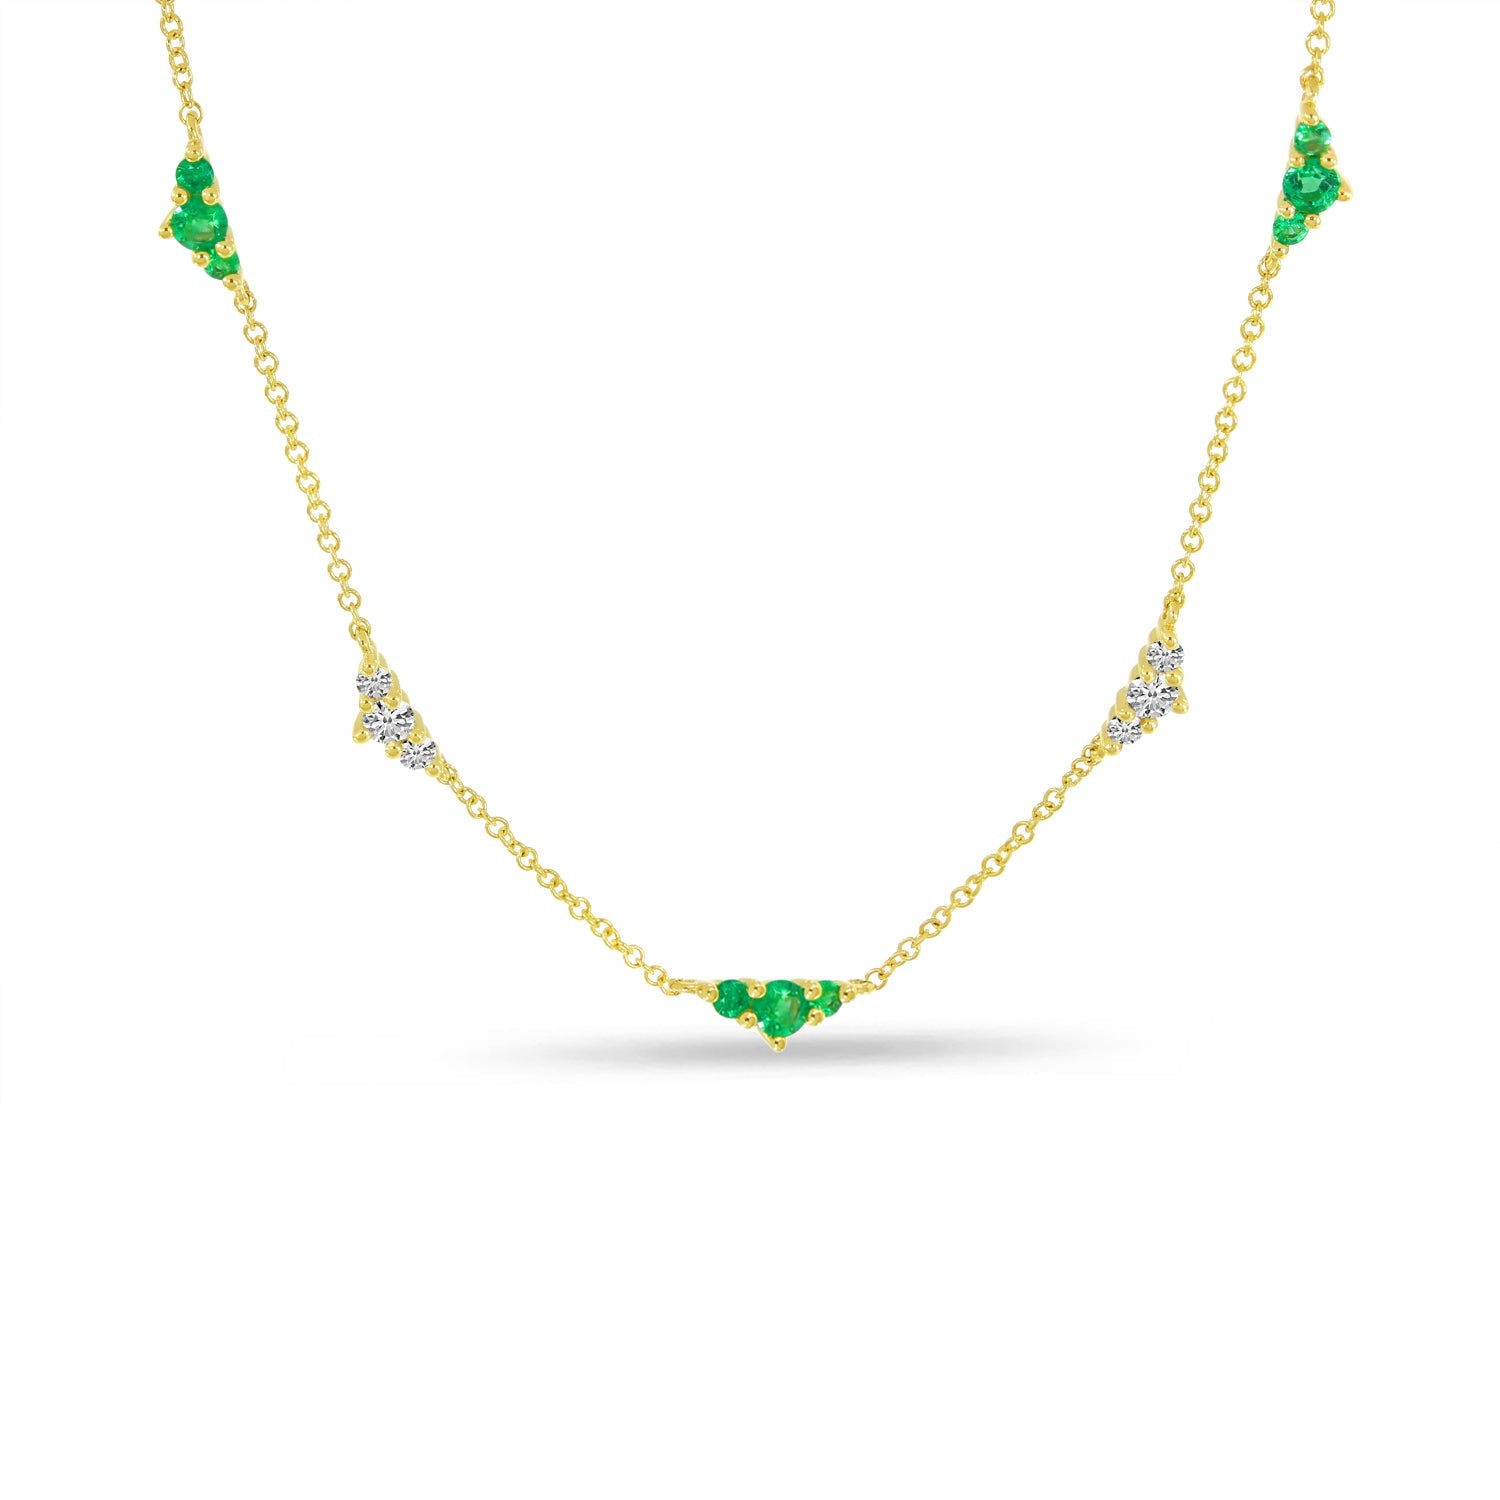 Emma Emerald Necklace by Snaffle Bit Bracelet Company